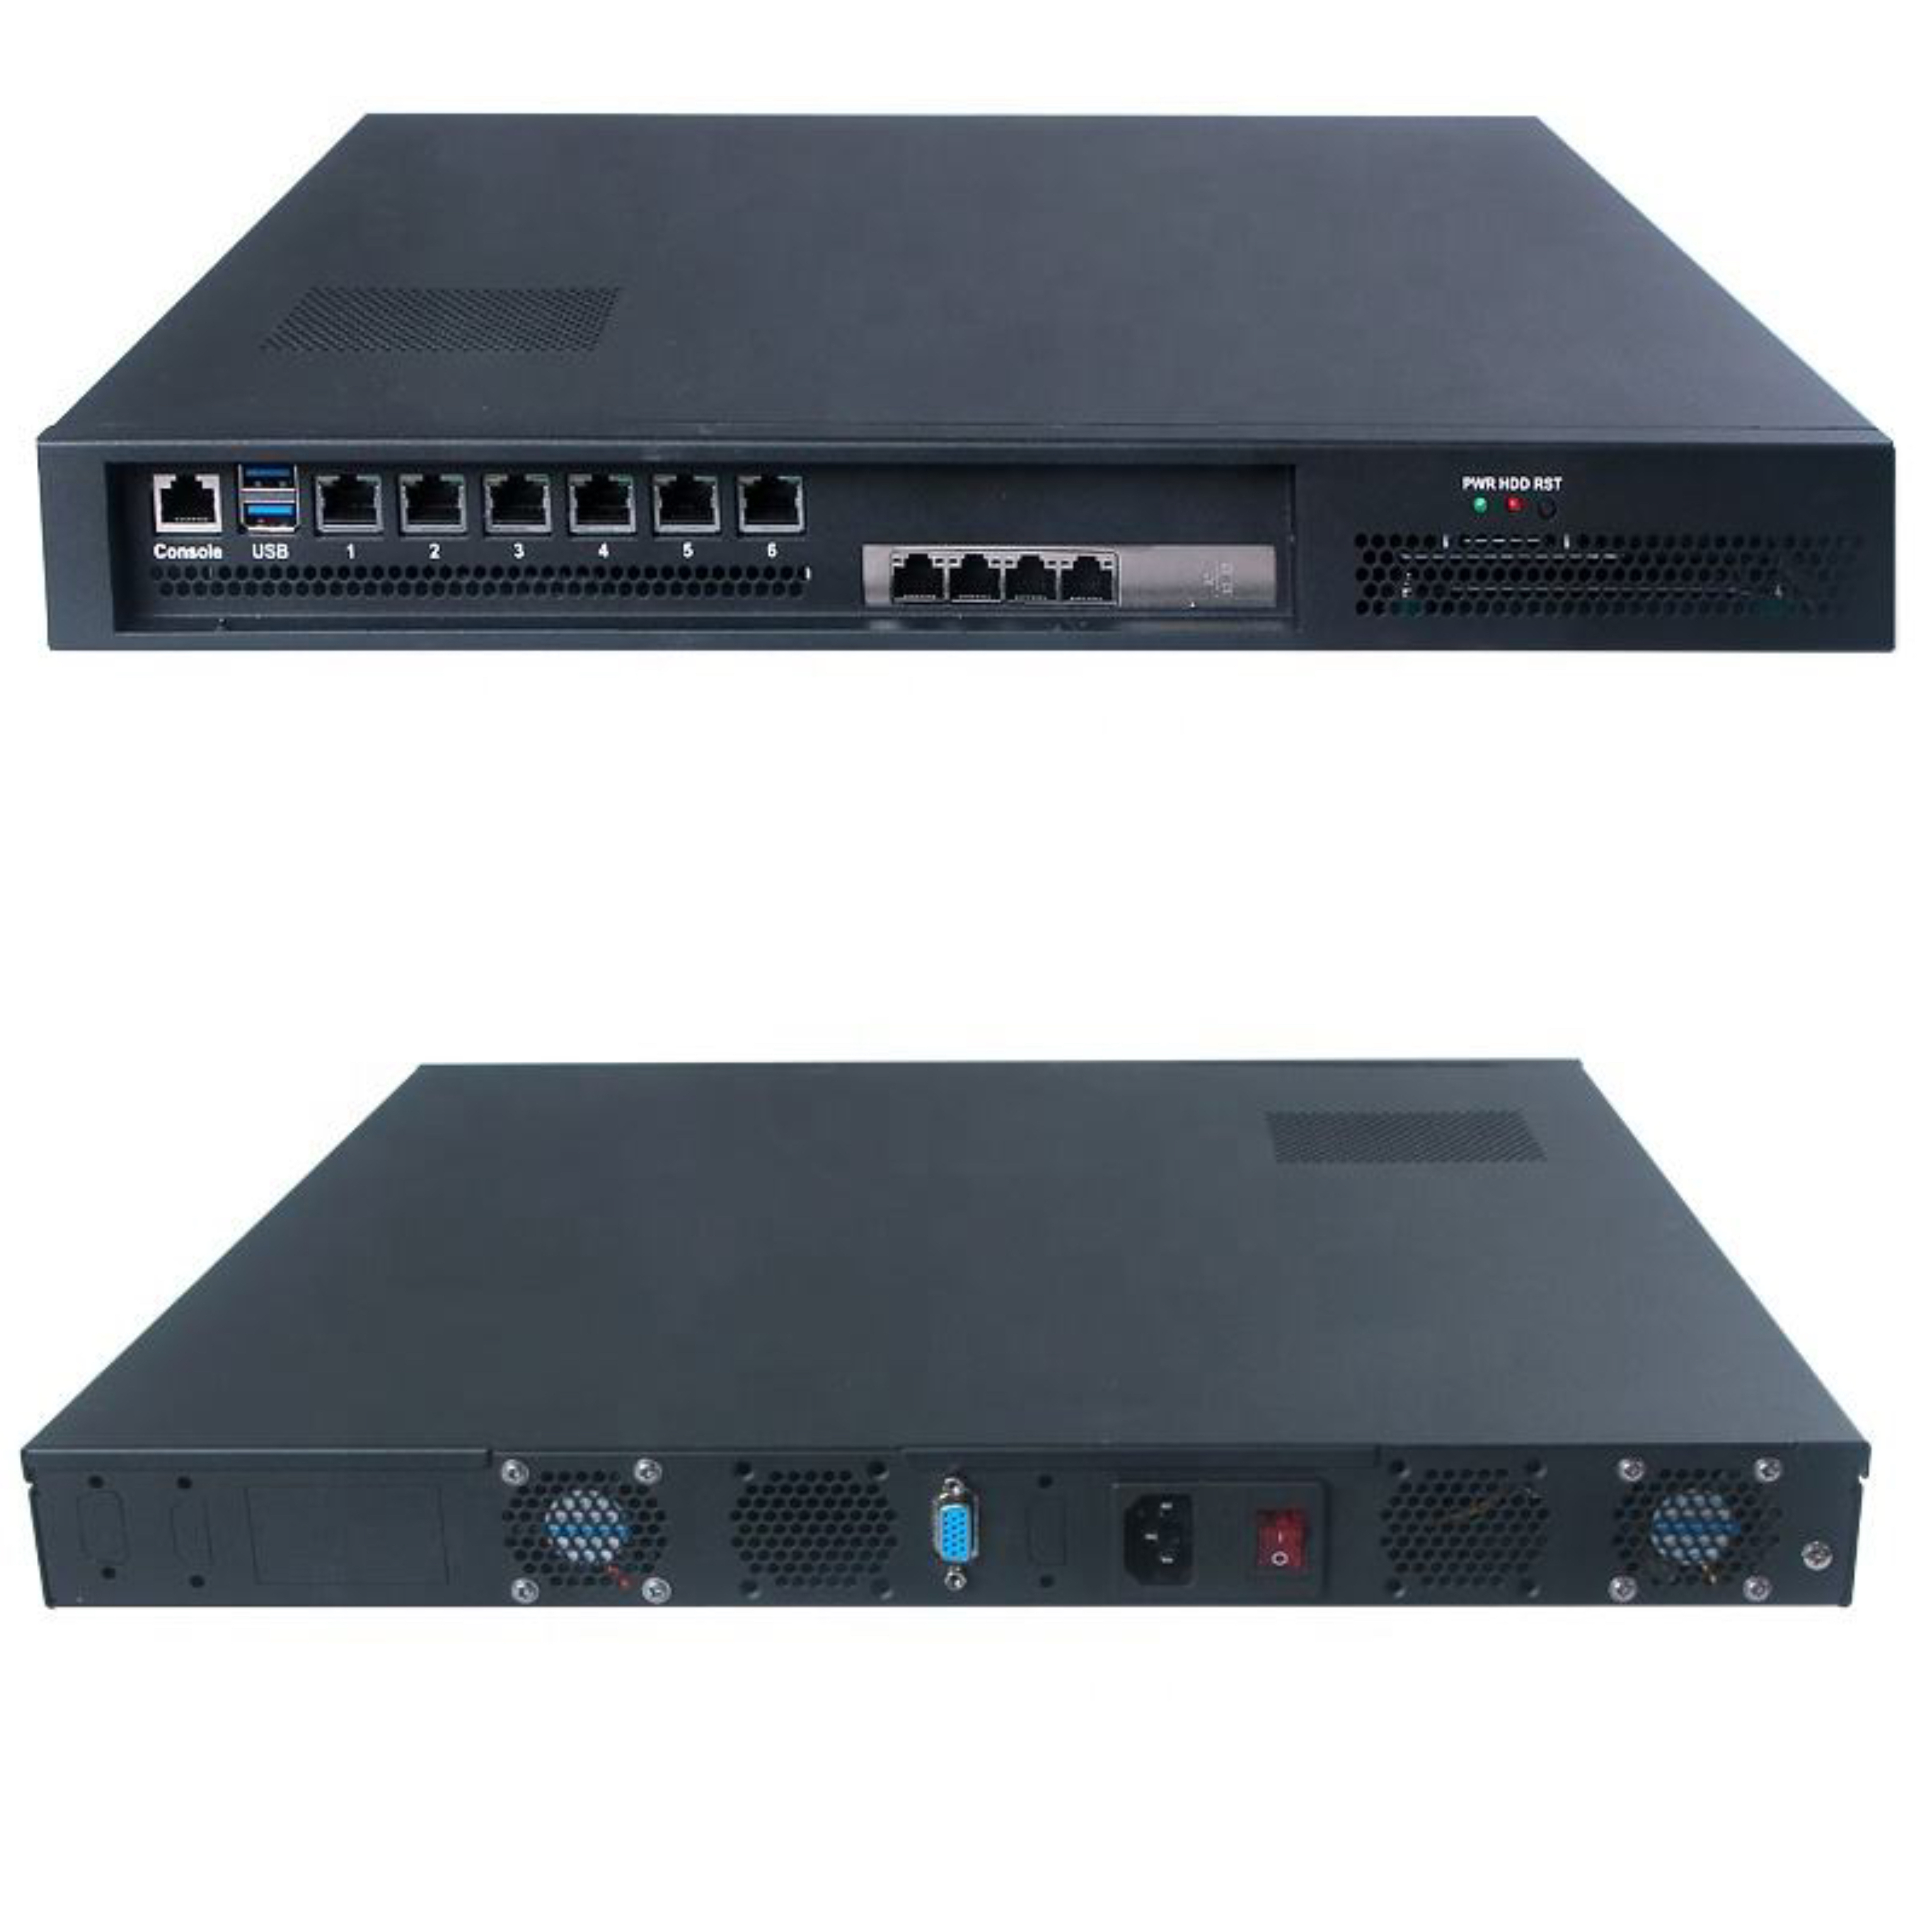 Router firewall Fanless industriale 6Lan 1 U degli apparecchi di rete DDR4 di undicesima generazione I3-1115G4